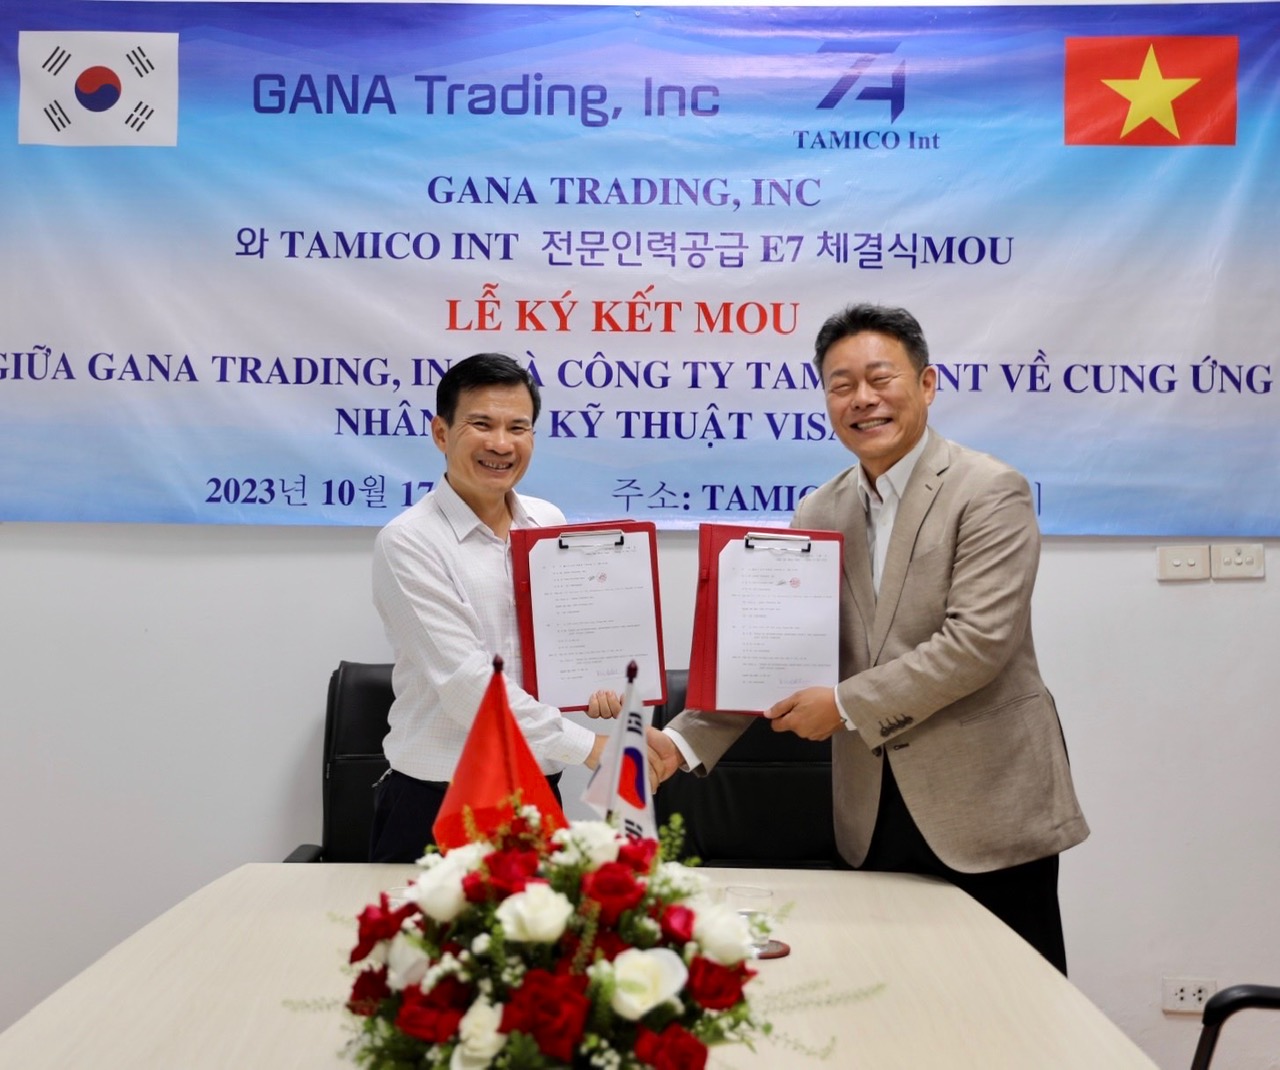 Buổi ký kết hợp tác với GANA TRADING, INC về cung ứng nhân lực kỹ thuật Visa E7